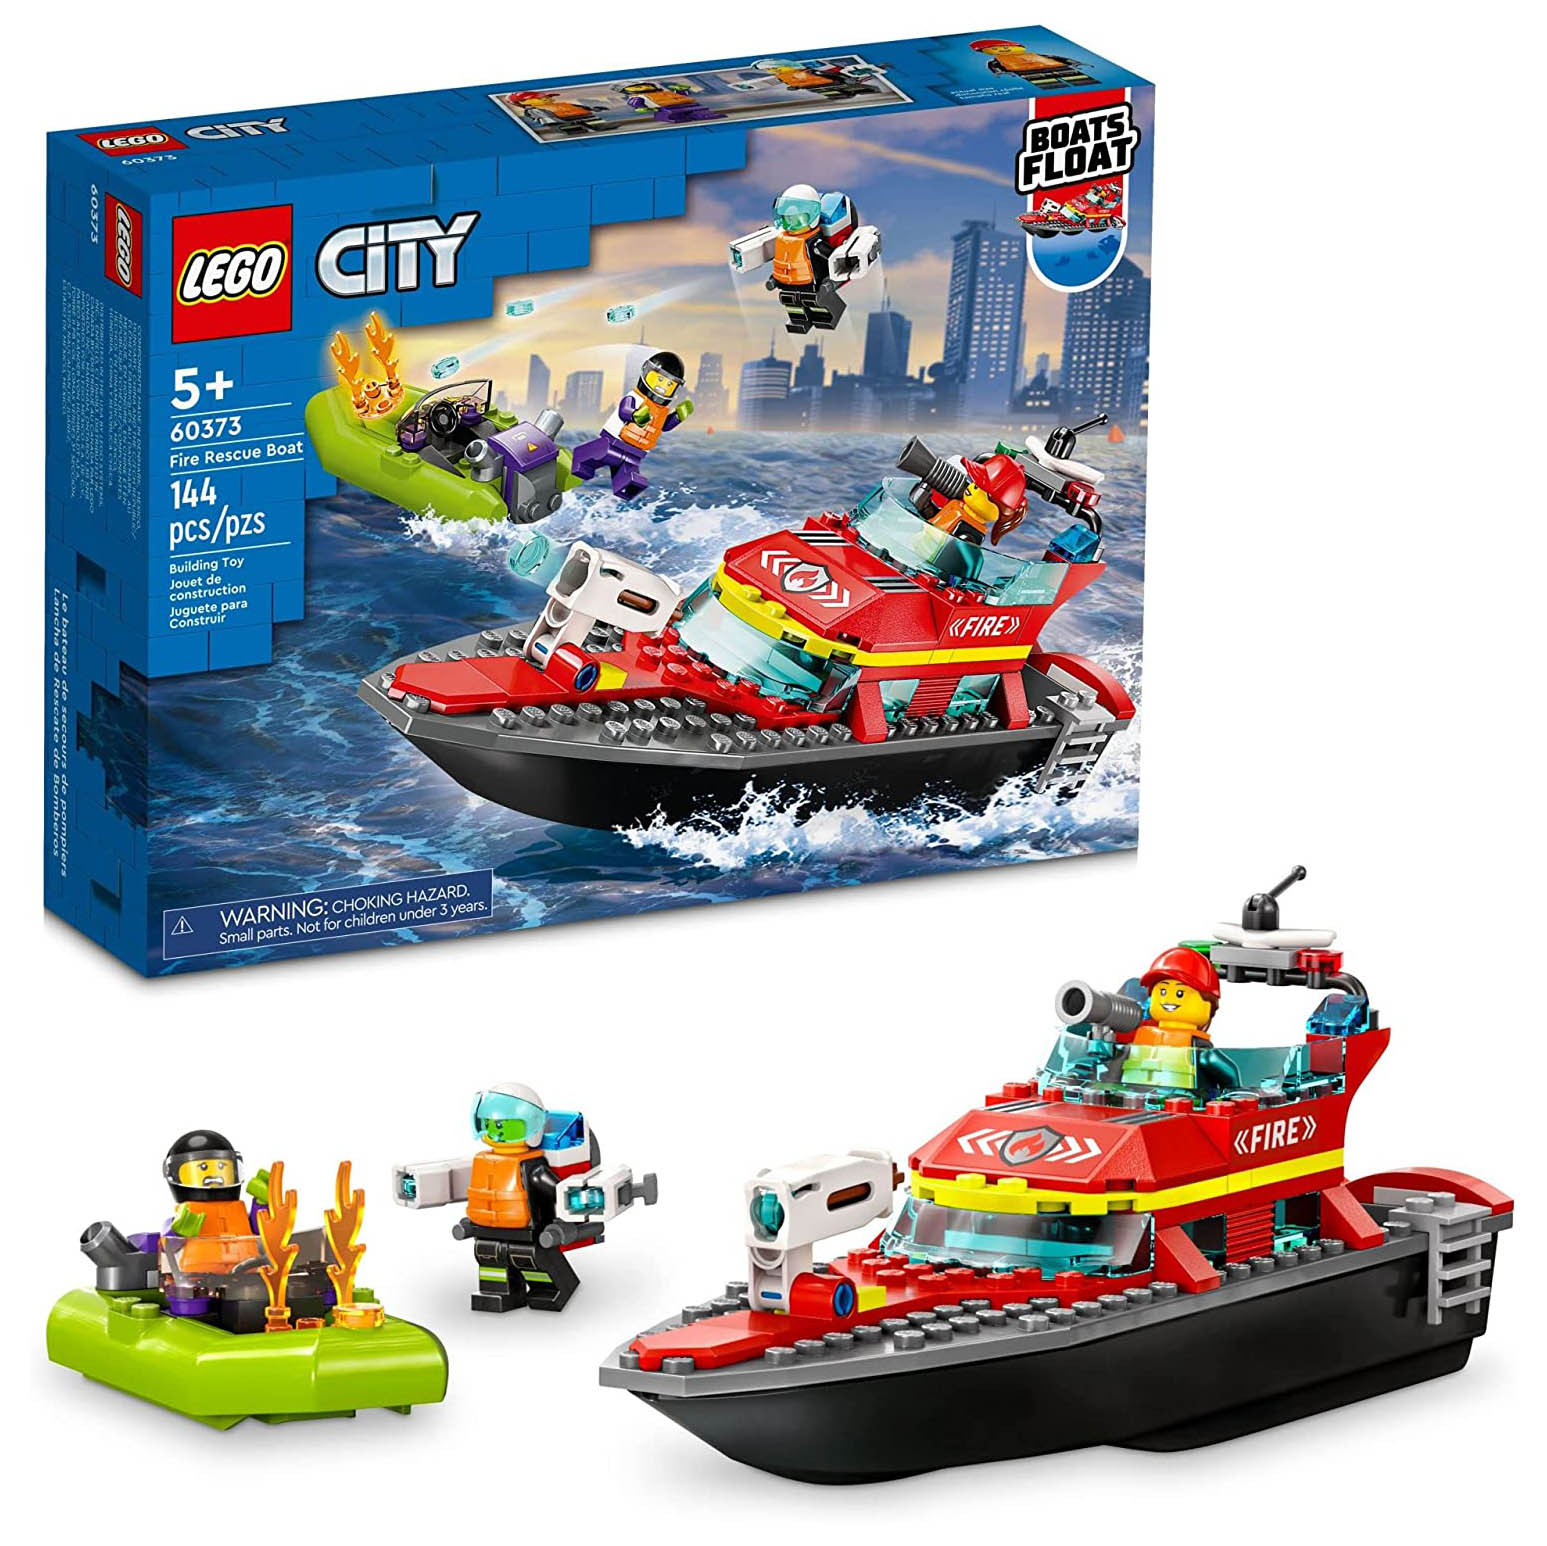 Конструктор LEGO City Пожарная спасательная лодка, 144 детали, 60373 конструктор lego city fire набор пожарная охрана для начинающих 60088